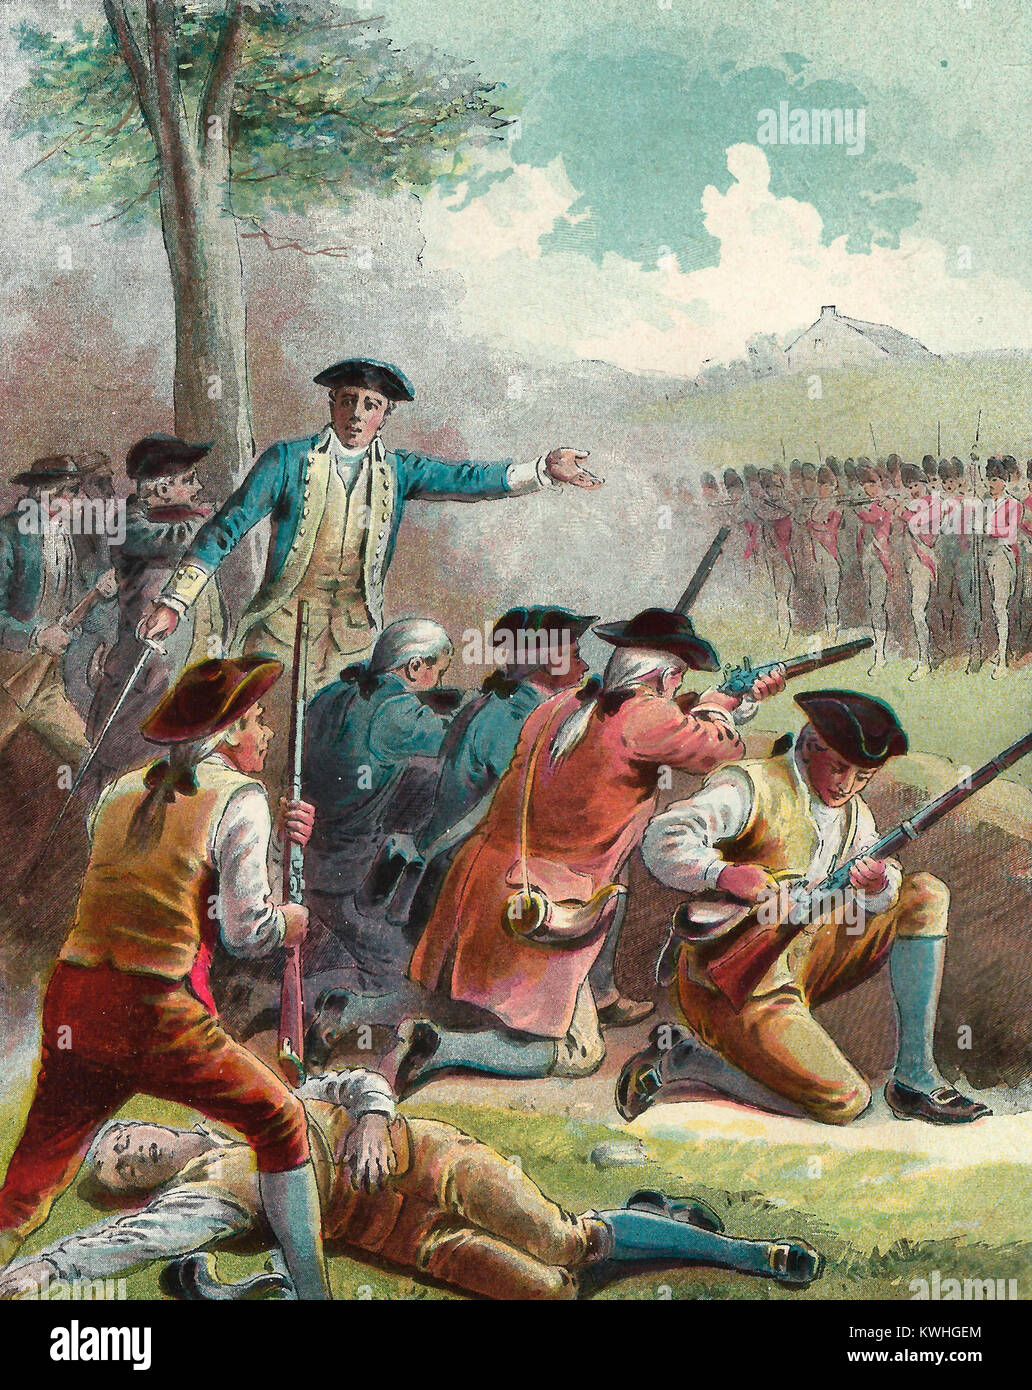 Attaquer les tuniques rouges à leur retour à Boston - Bataille de Concord - Révolution américaine, 1775 Banque D'Images